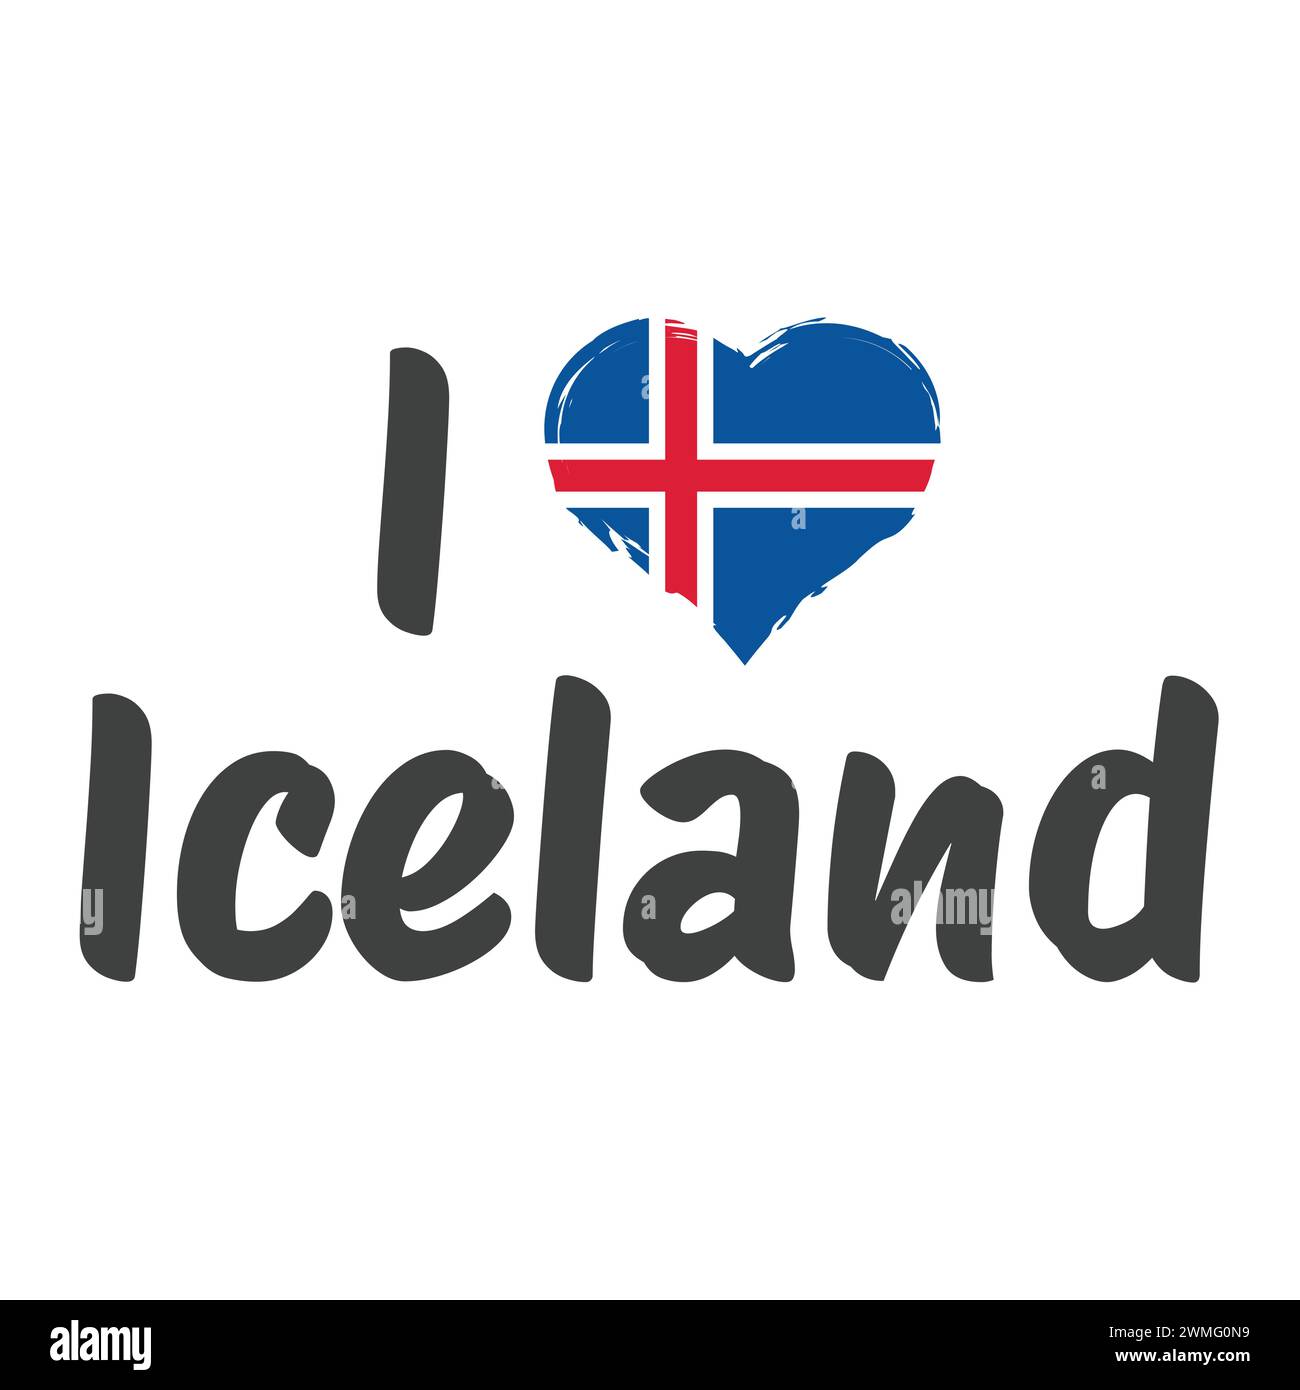 Amo le lettere vettoriali islandesi. Design con bandiera islandese. Illustrazione Vettoriale